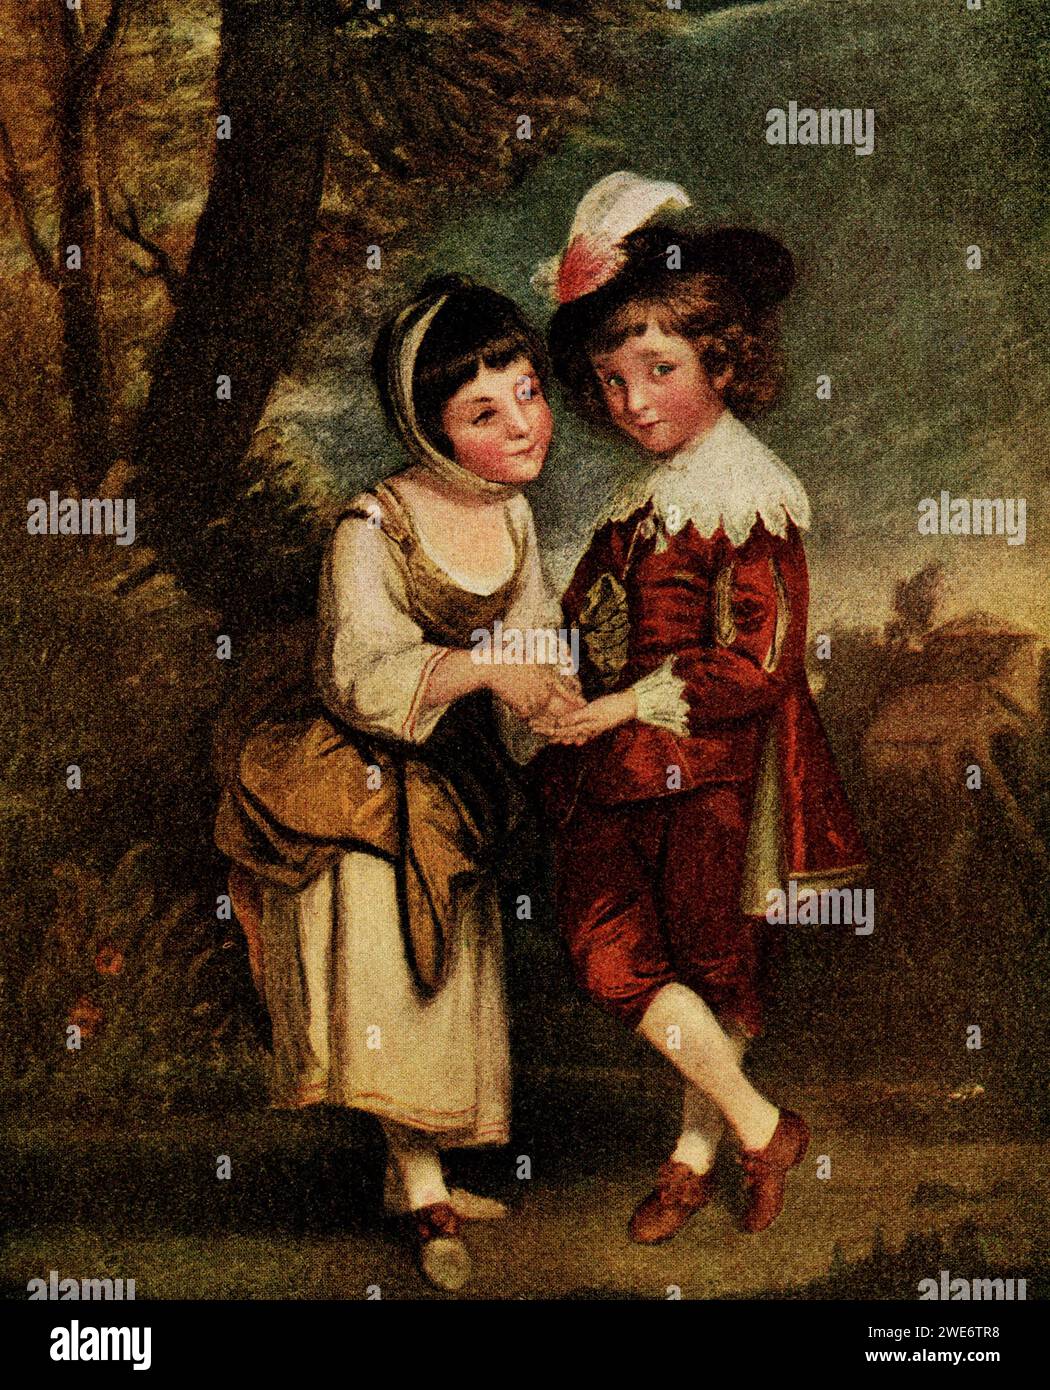 Hier ist das Gemälde The Young Fortune Teller des englischen Malers Sir Joshua Reynolds (1723–1792) zu sehen, der für seinen Stil bekannt ist, der anmutig in der Komposition und schön in der Färbung ist. Stockfoto